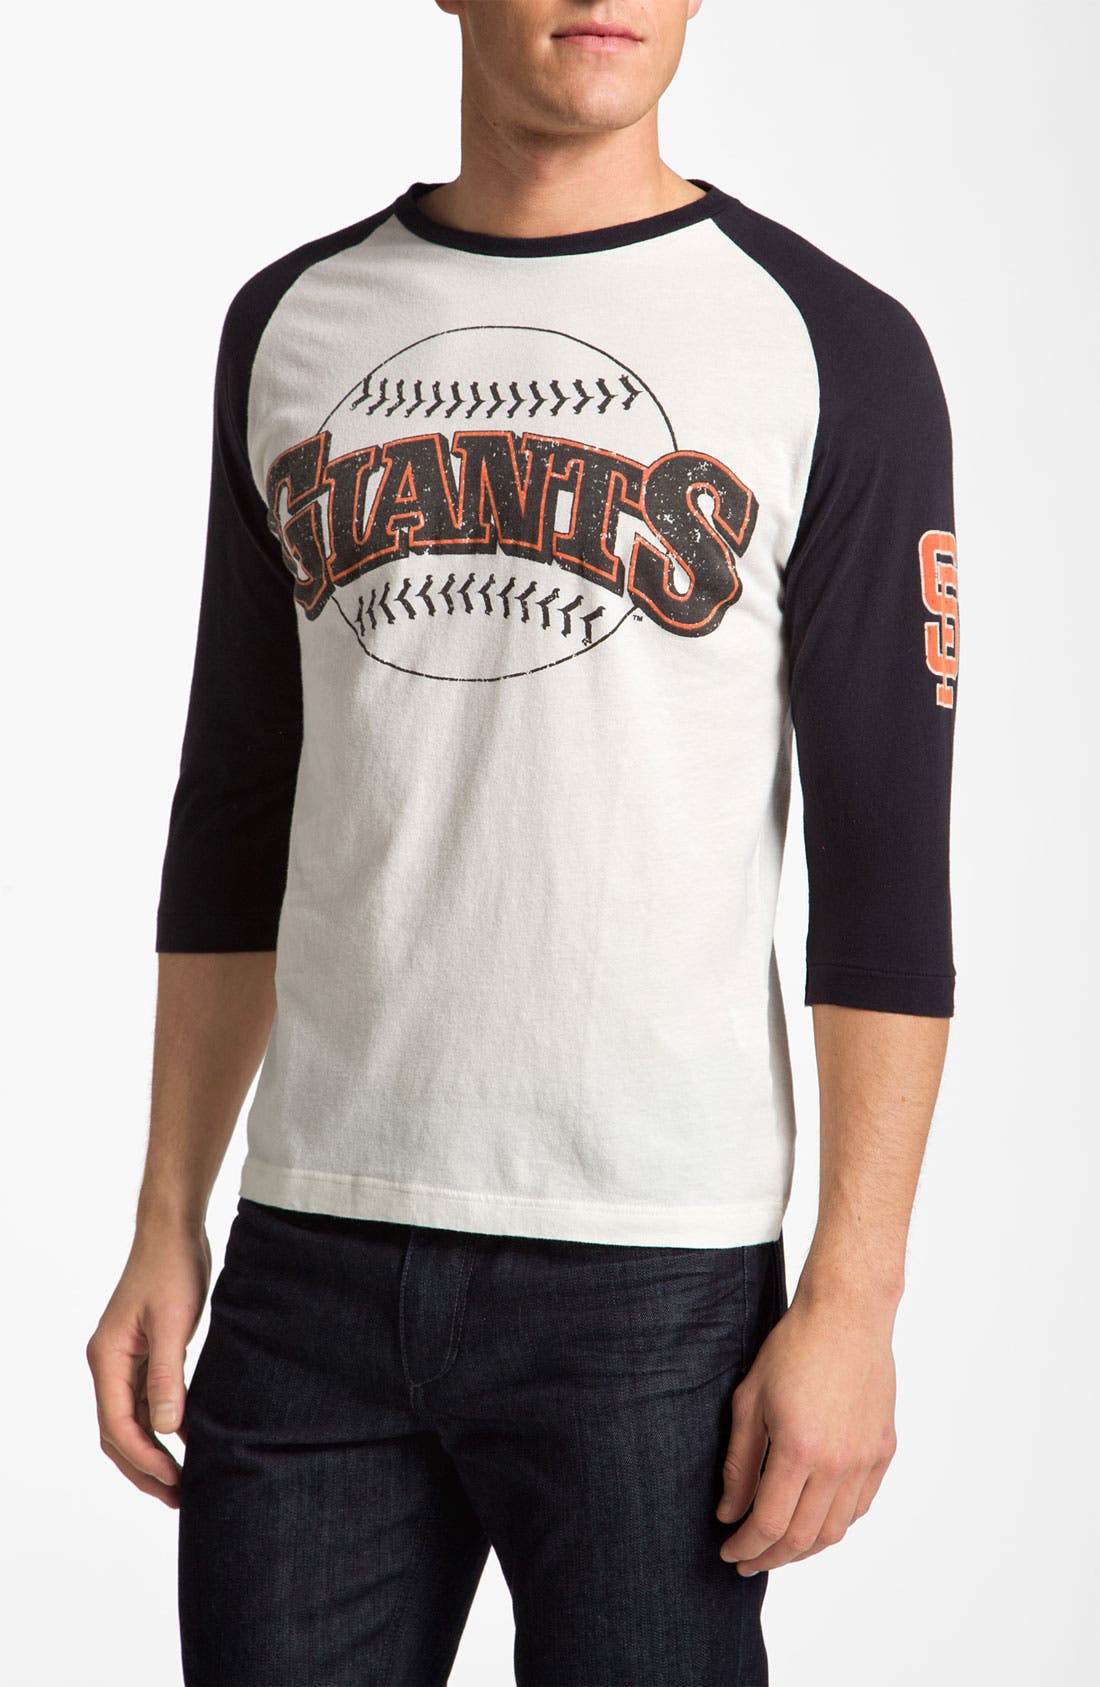 san francisco giants baseball t shirt